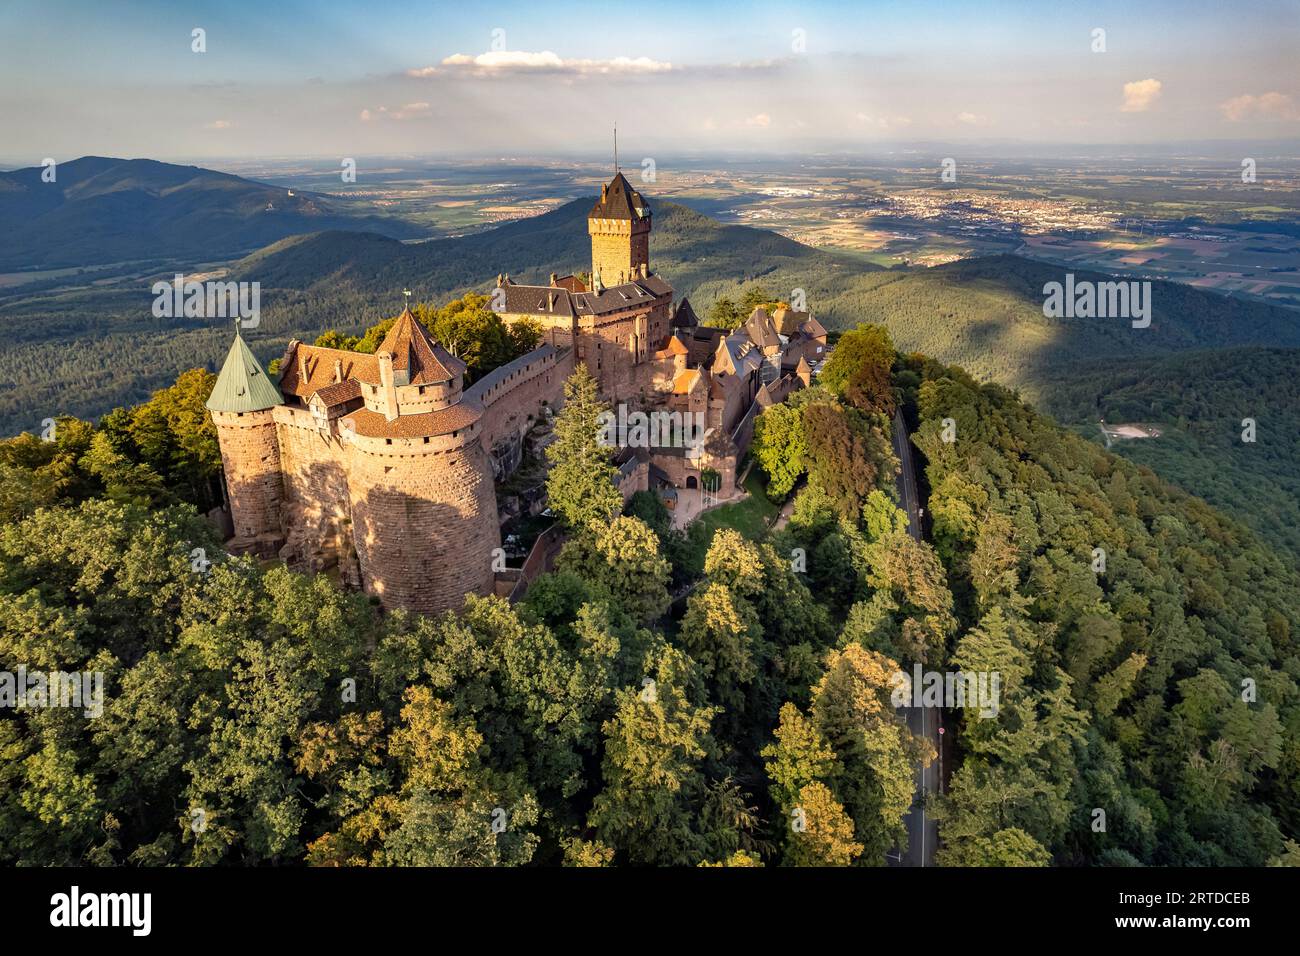 Die Hohkönigsburg Chateau du Haut-Koenigsbourg aus der Luft gesehen, Orschwiller, Elsass, Frankreich | Vista aerea del castello di Haut-Ko Foto Stock